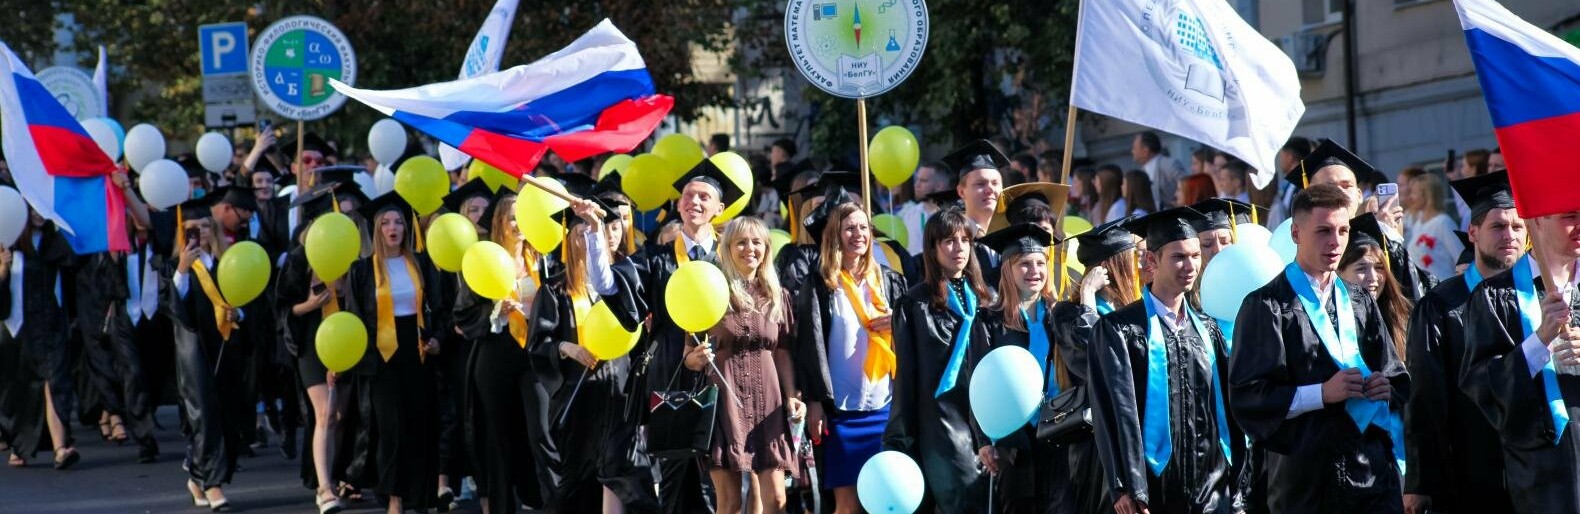 Студенческое шествие 1 сентября в Белгороде. Фоторепортаж